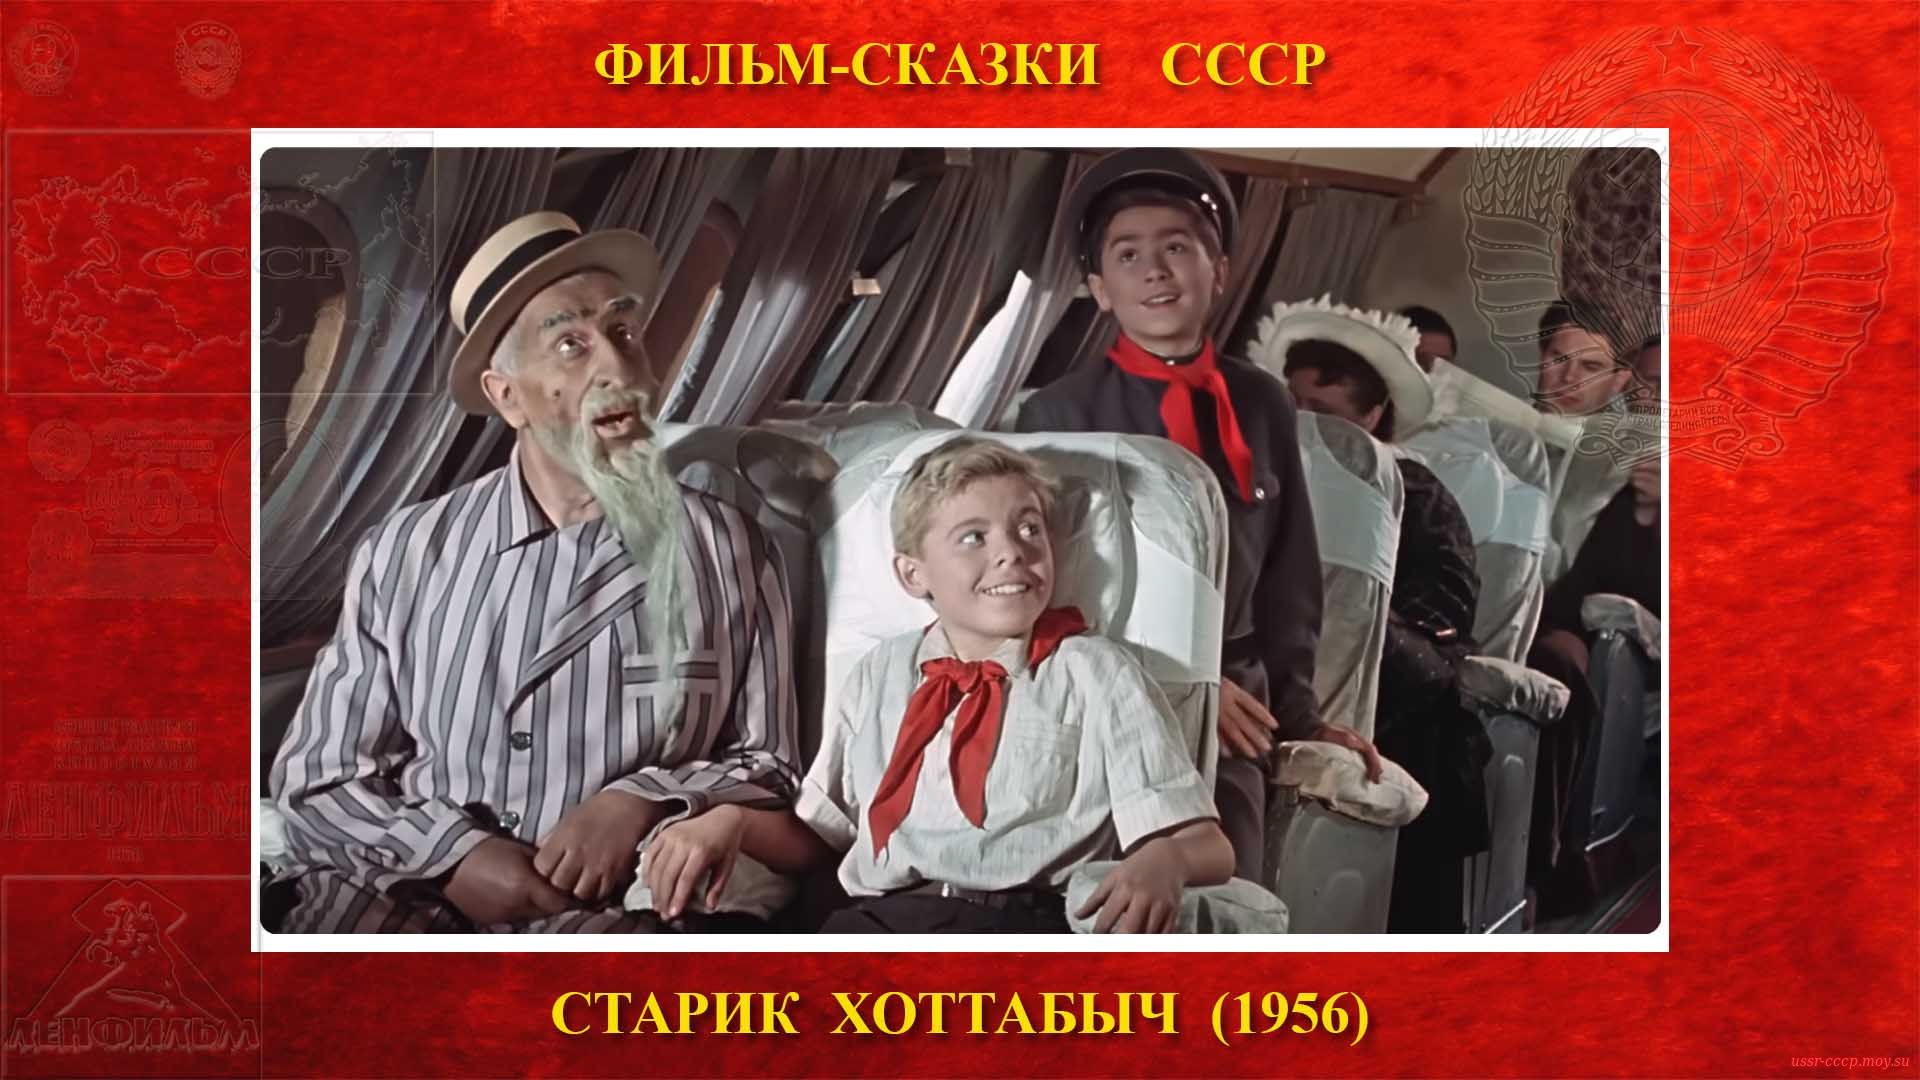 Хоттабыч наколдовал и они оказались в самолёте Ту-104 летящим в Москву